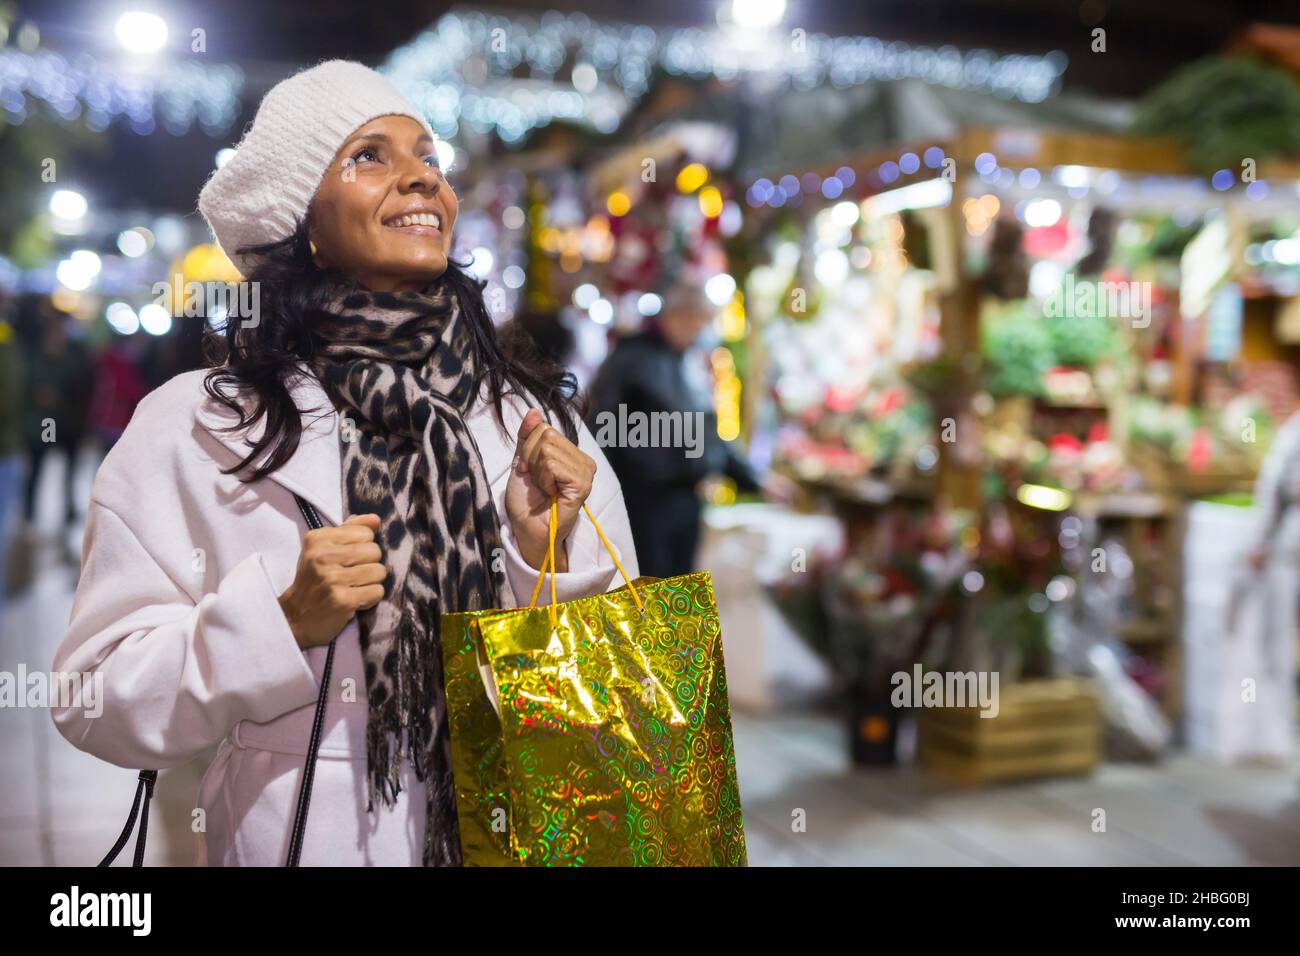 Ritratto emotivo di donna shopping al mercato di Natale Foto Stock